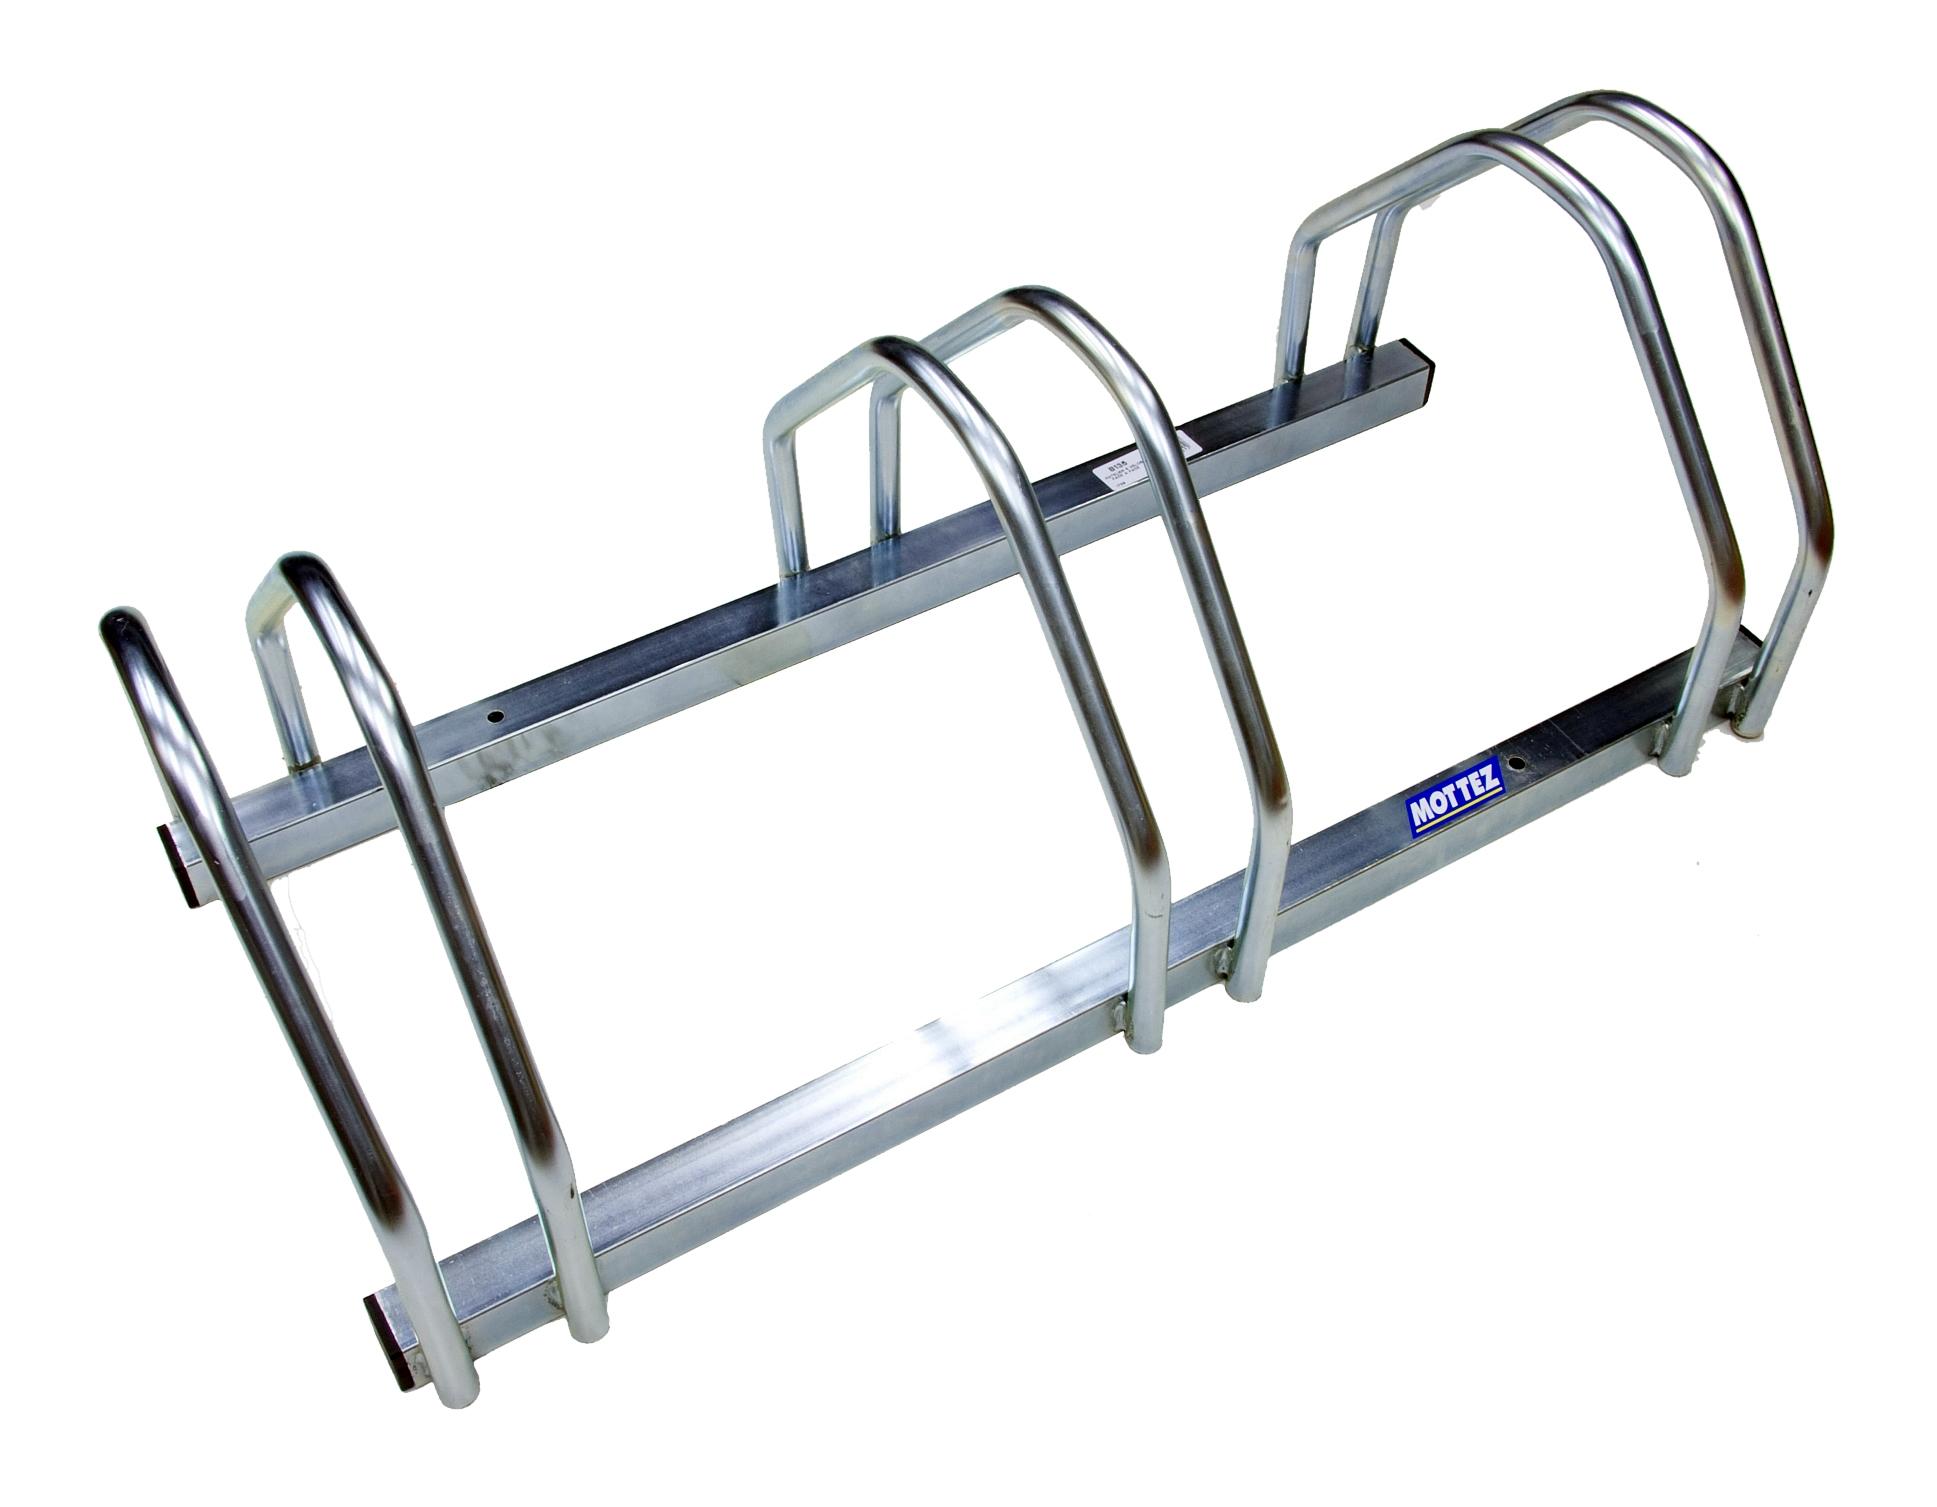 bicycle floor rack